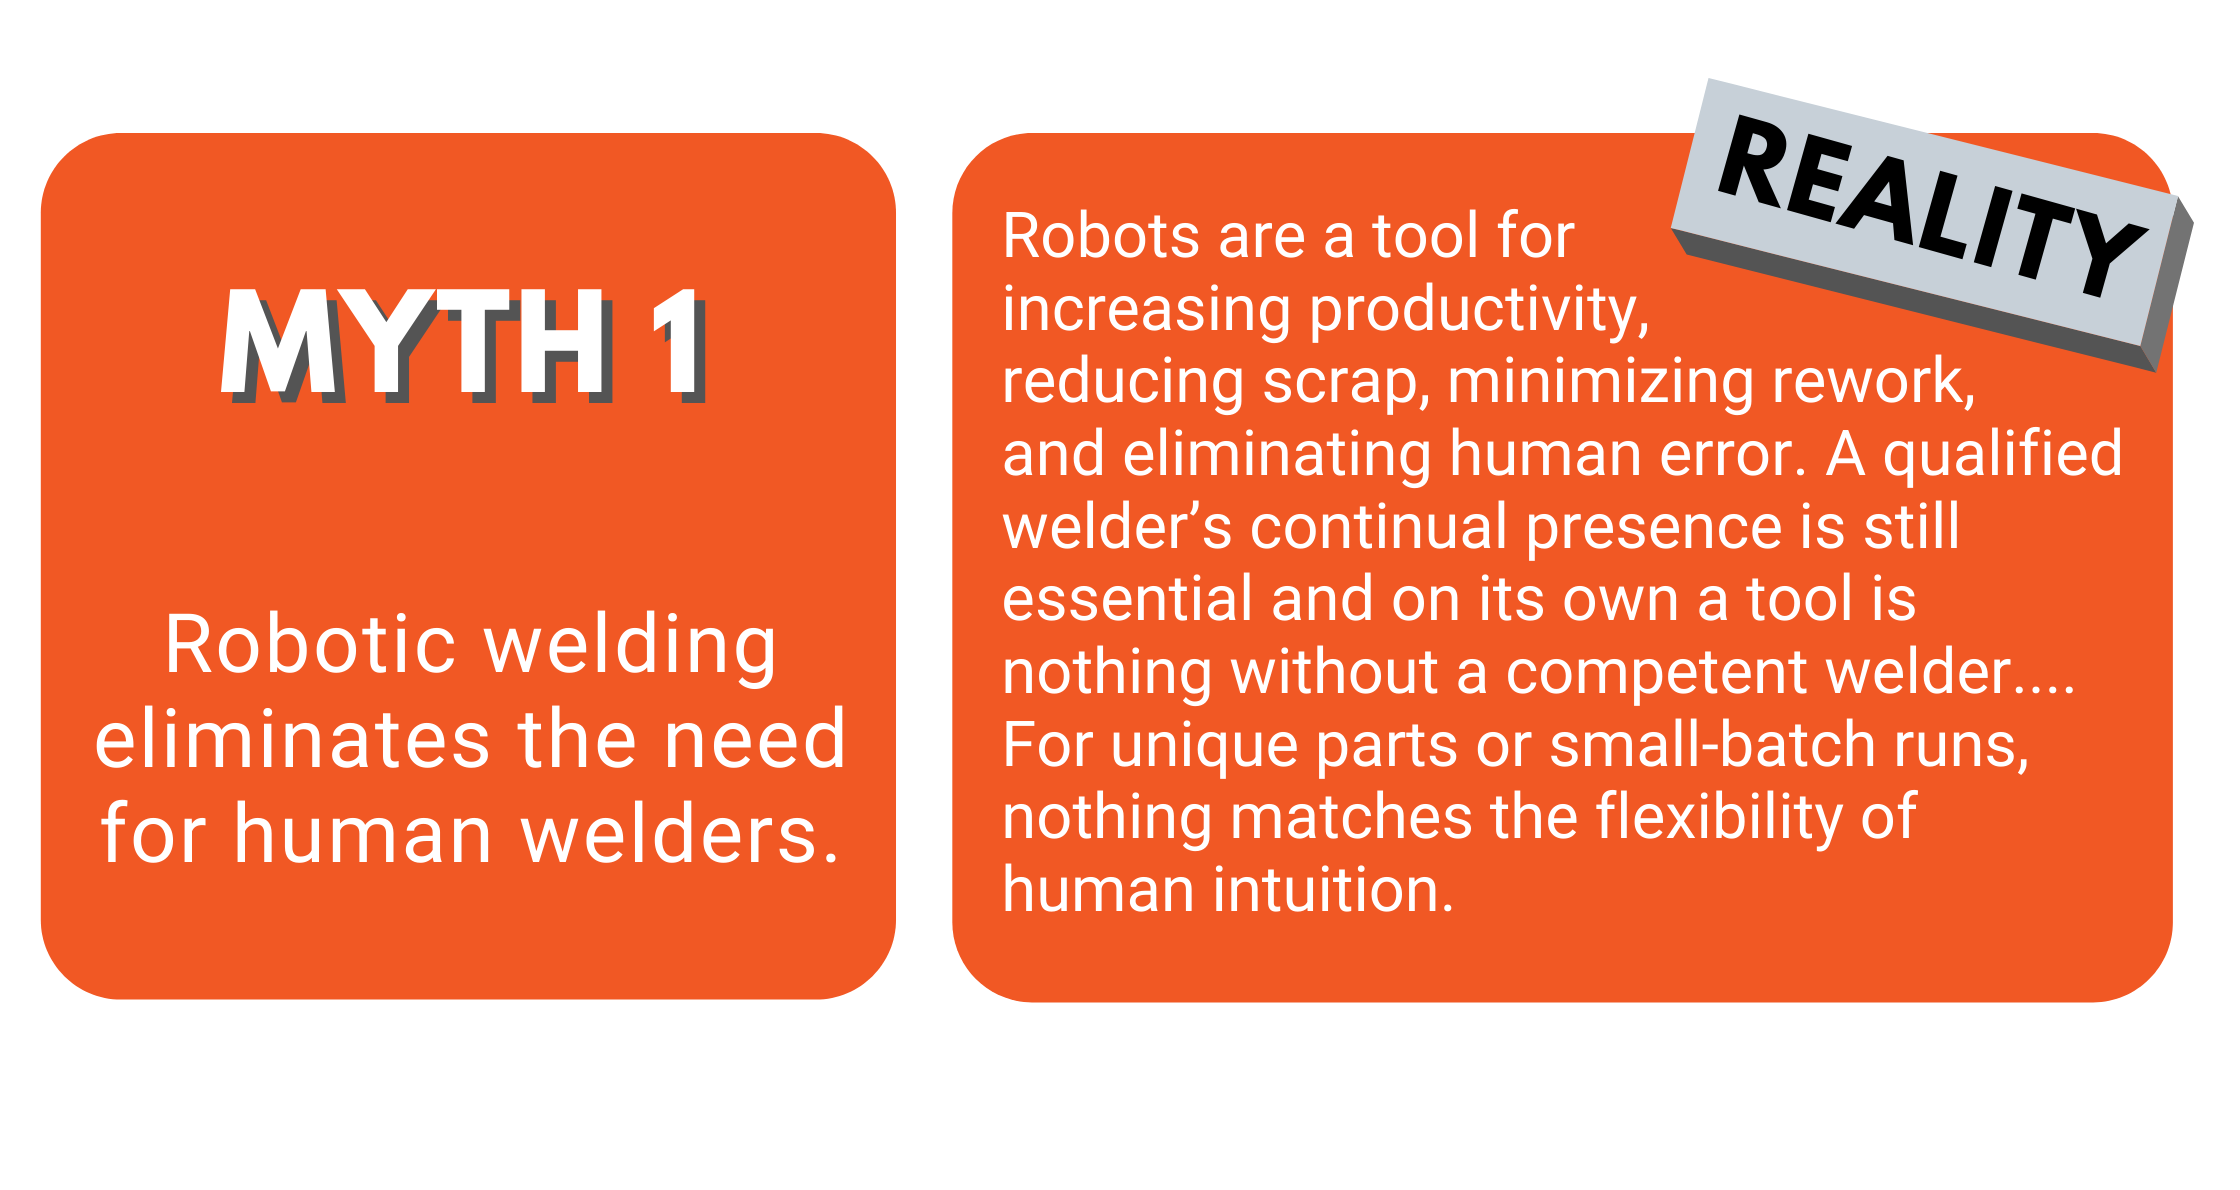 Welding robots do not replace human welders